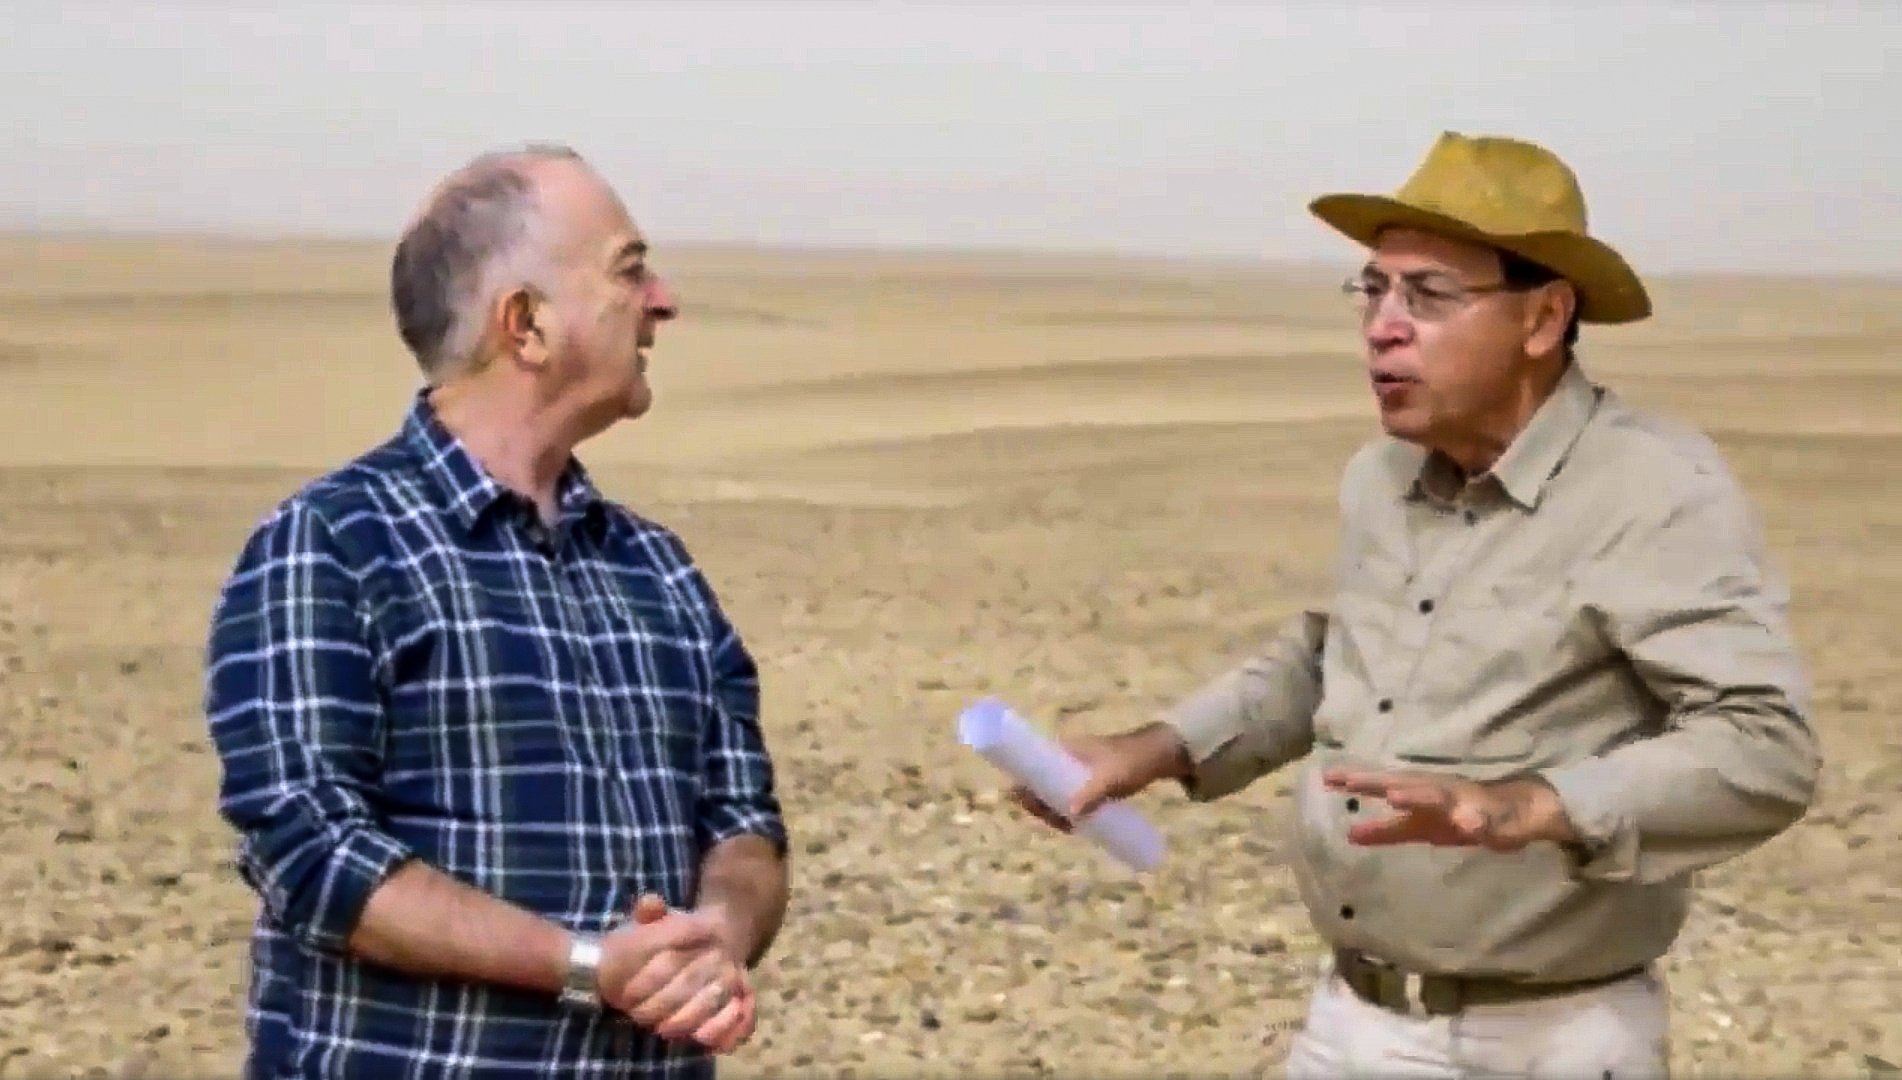 Dobrev 博士向 Tony Robinson 解释了在 Saqqara 的位置